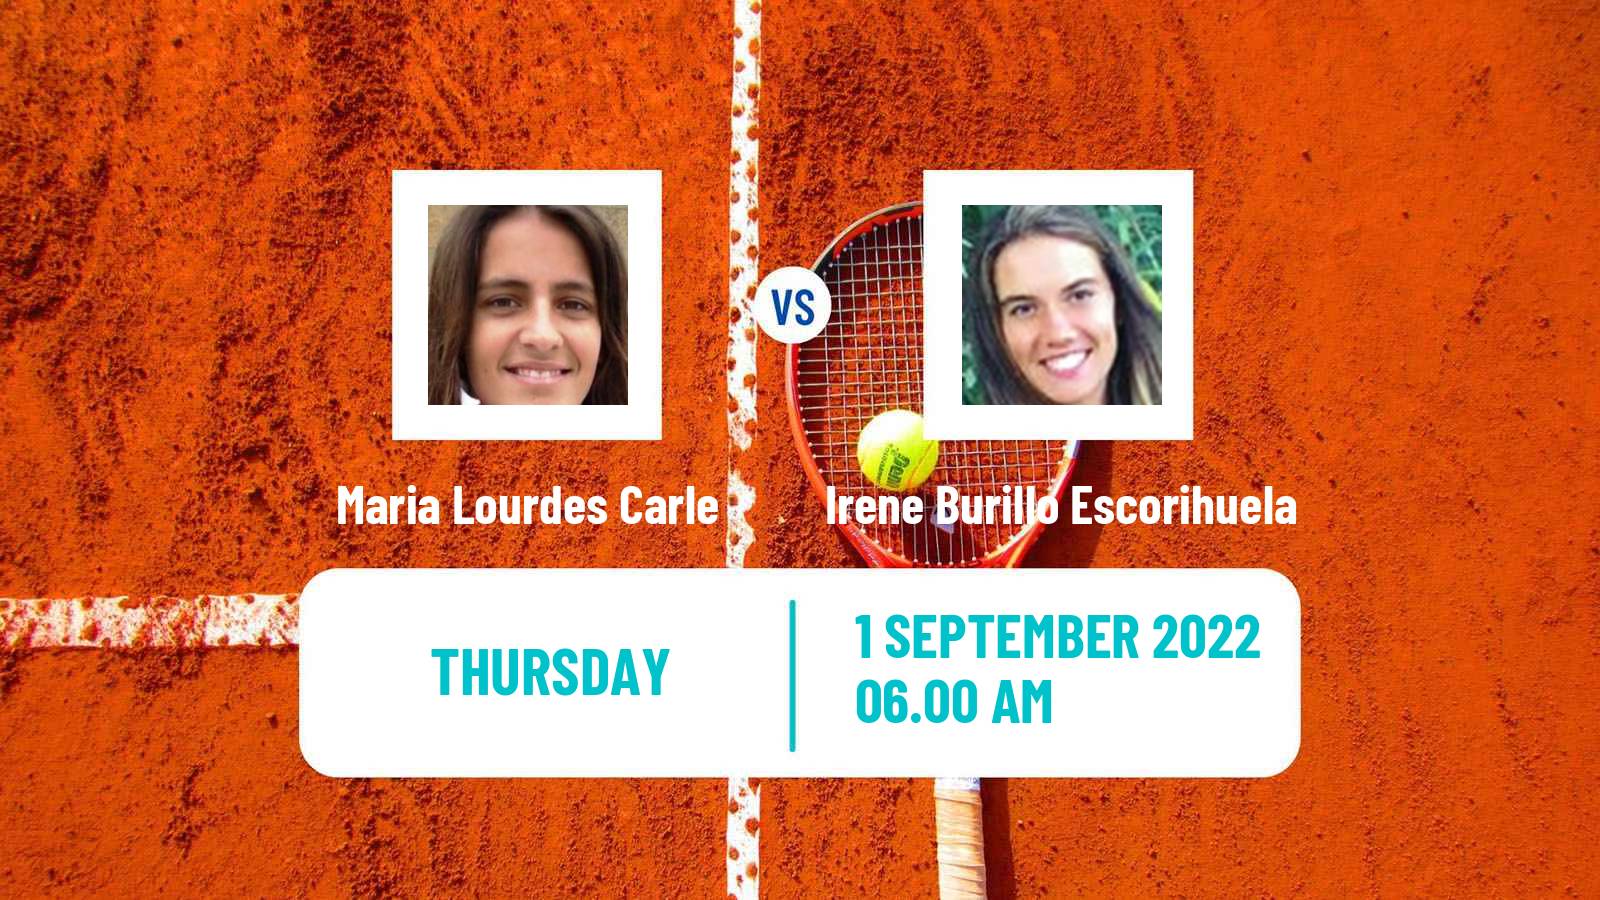 Tennis ITF Tournaments Maria Lourdes Carle - Irene Burillo Escorihuela